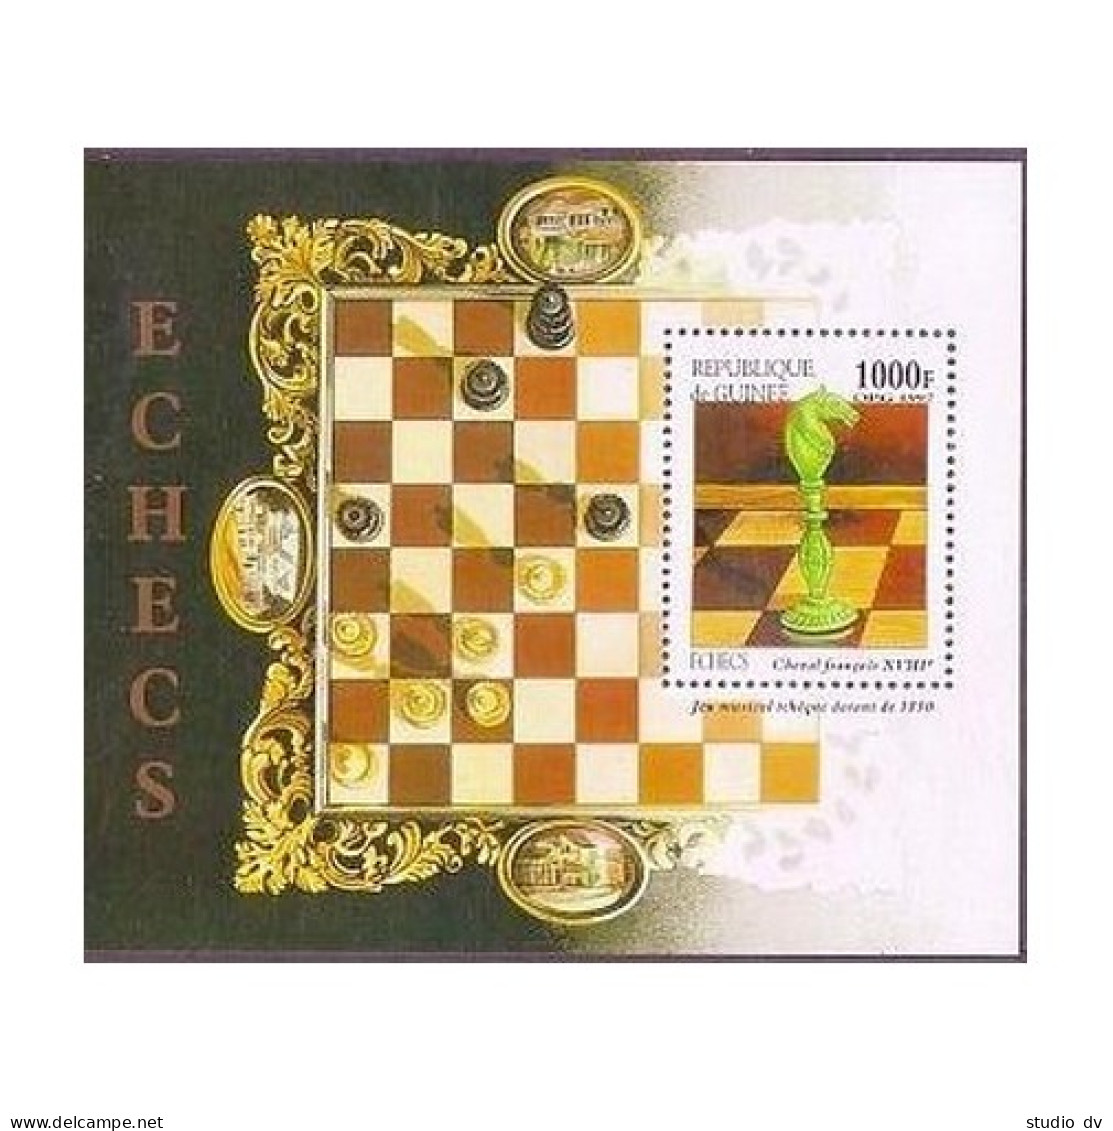 Guinea 1409A-1409F, 1409G, MNH. Chess Pieces, 1997. - Guinée (1958-...)